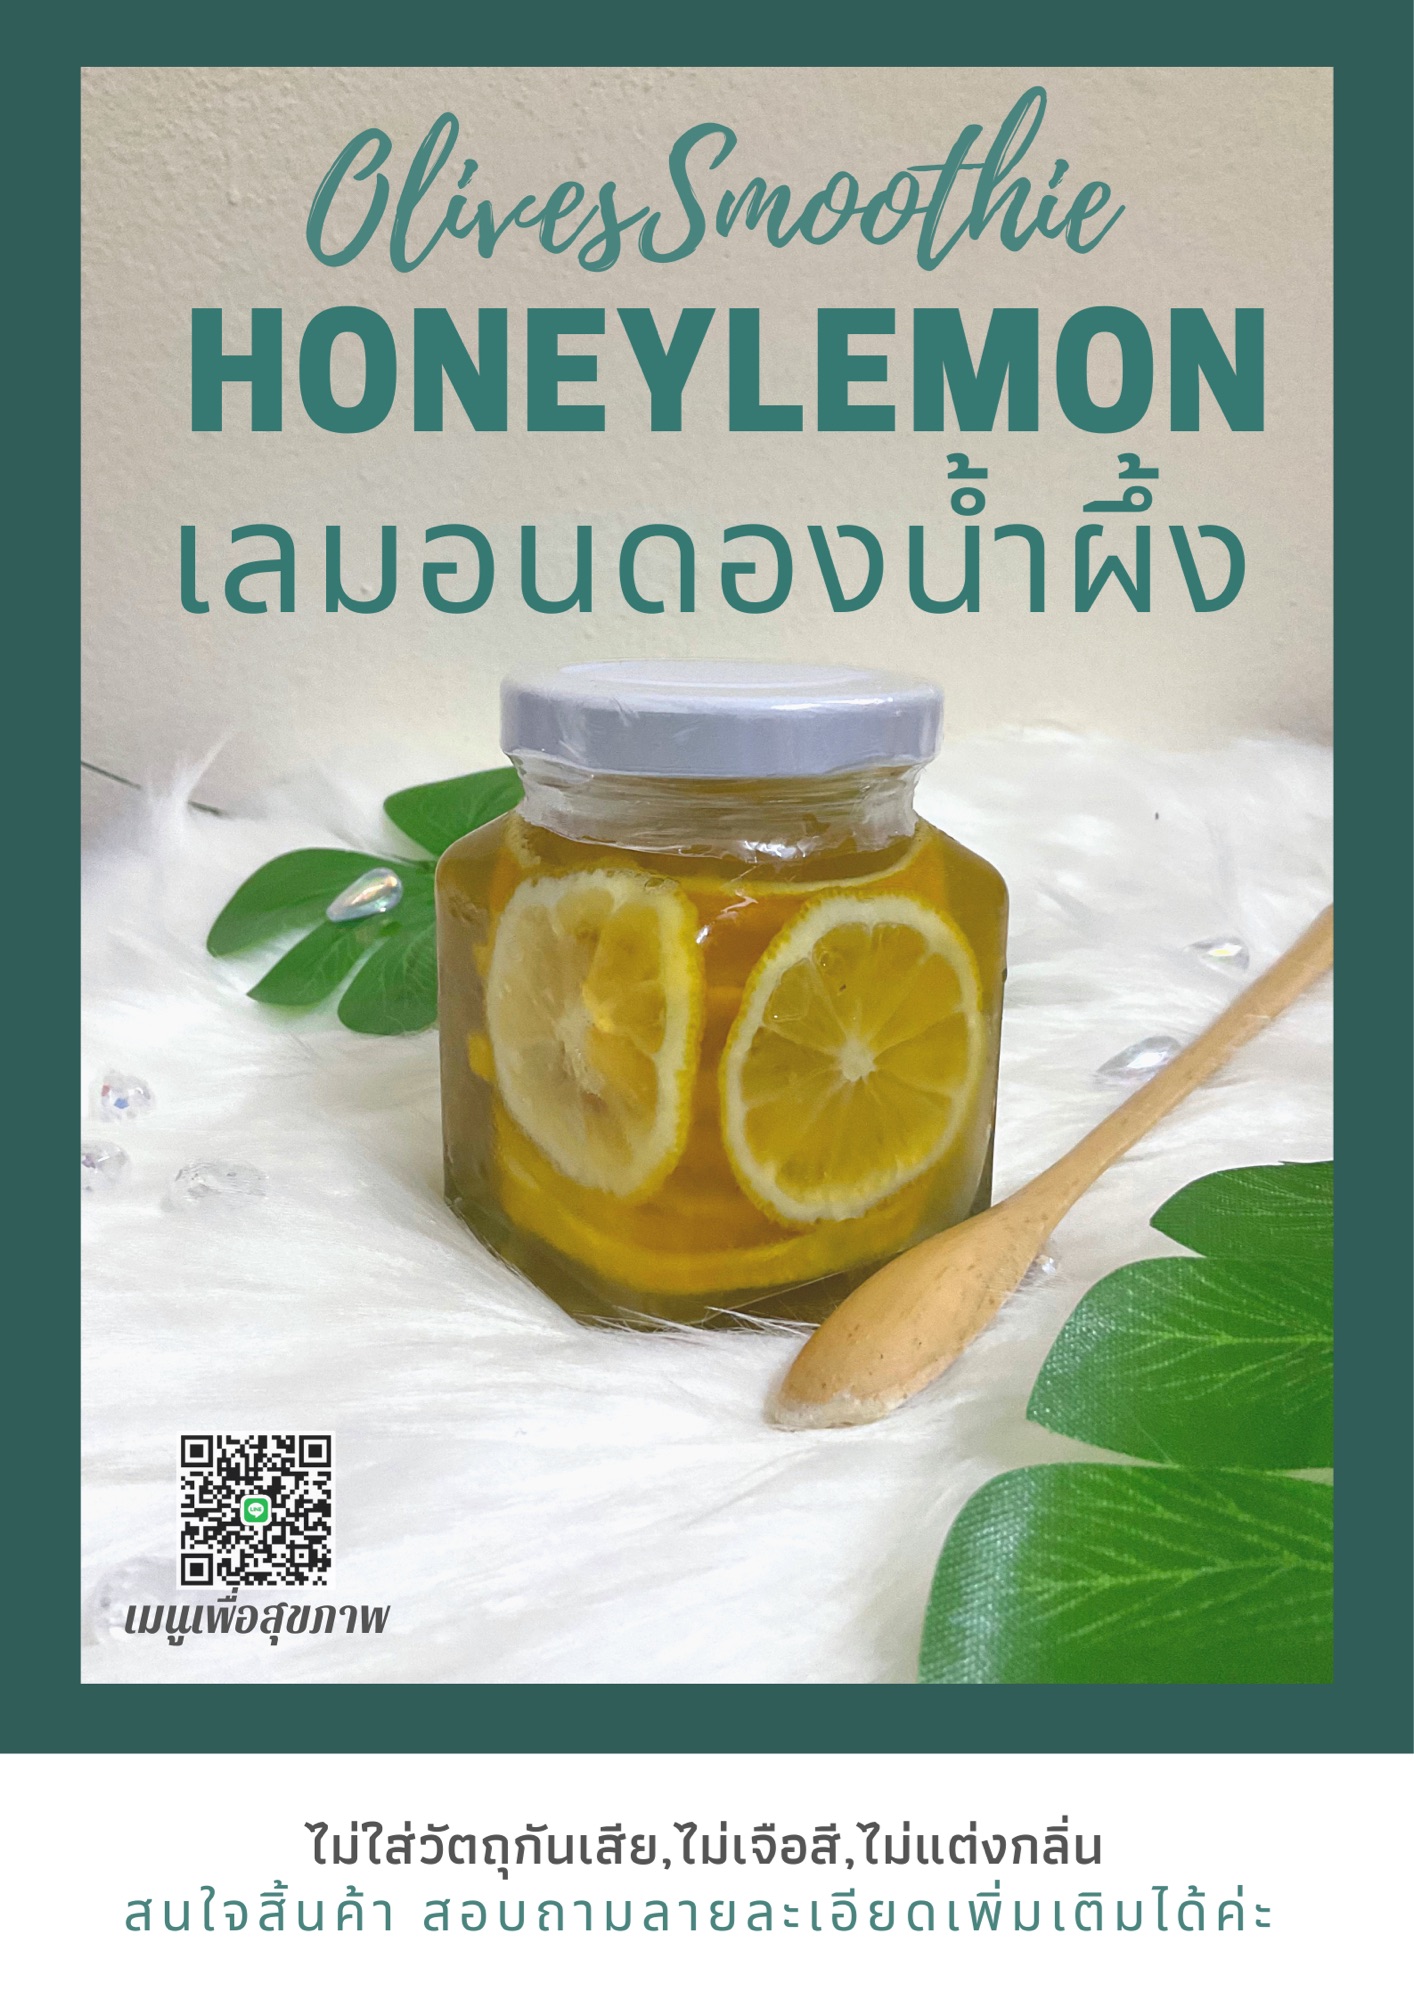 Honey Lemon 🍋เลมอนดองน้ำผึ้ง เราใช้น้ำผึ้งเลี้ยงจากดอกลำใย ไม่ผสมน้ำเชื่อม💯